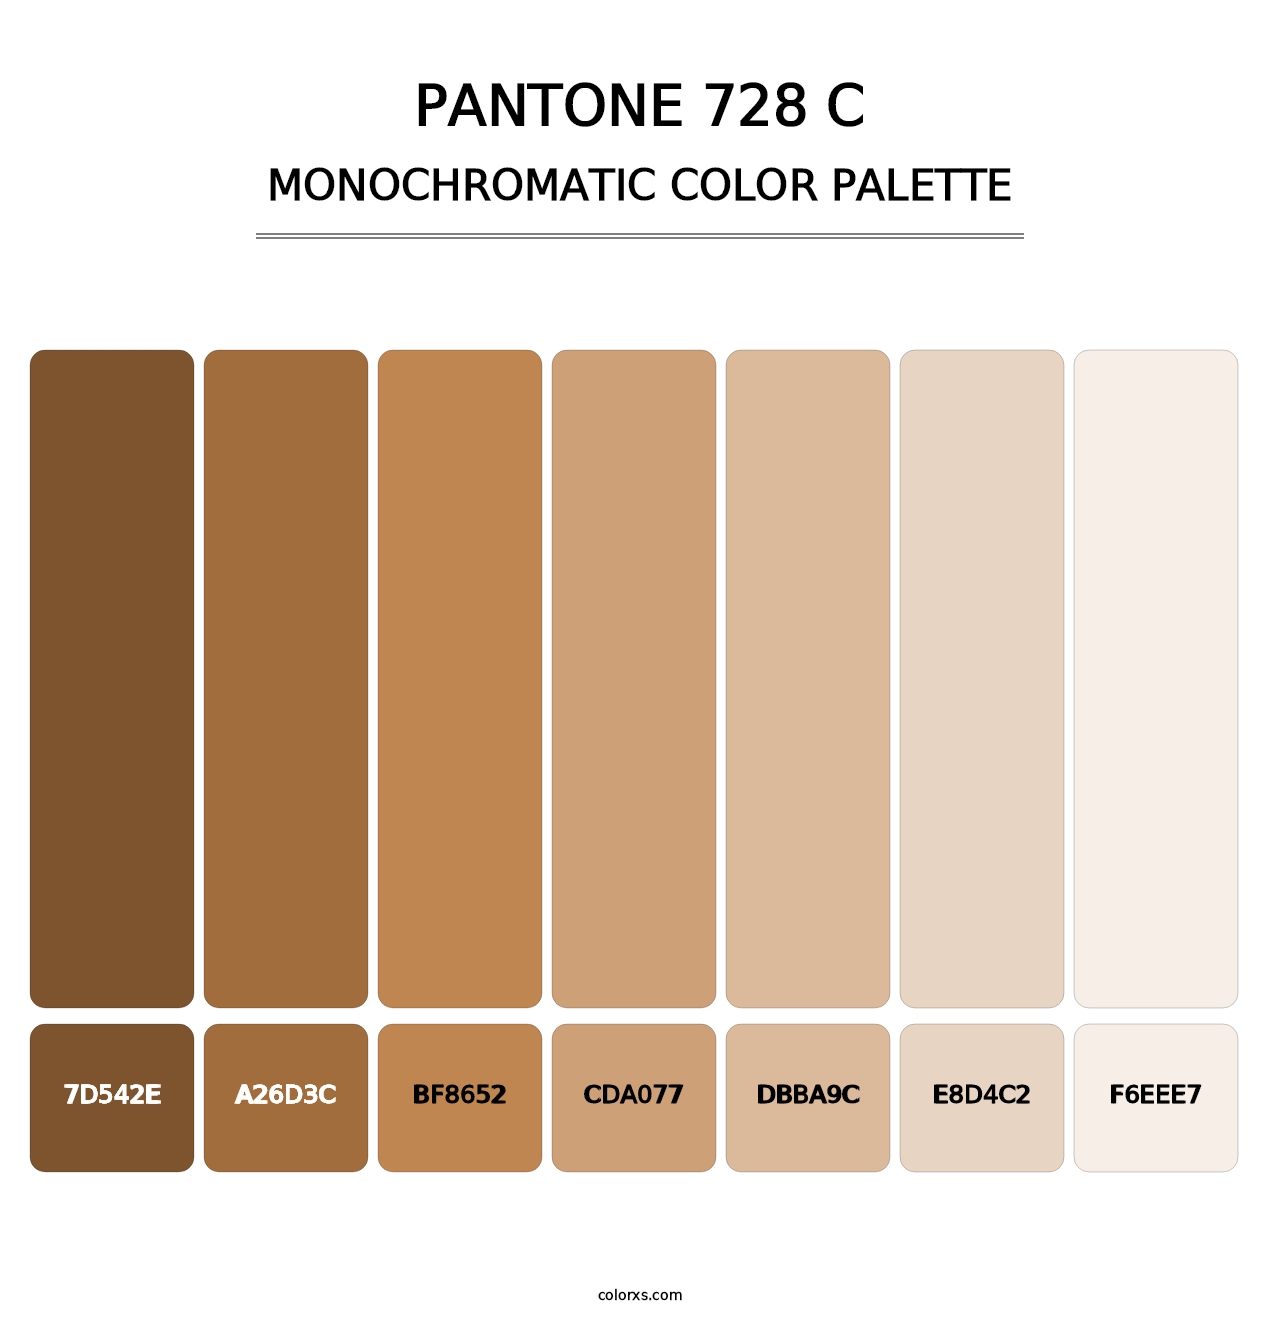 PANTONE 728 C - Monochromatic Color Palette